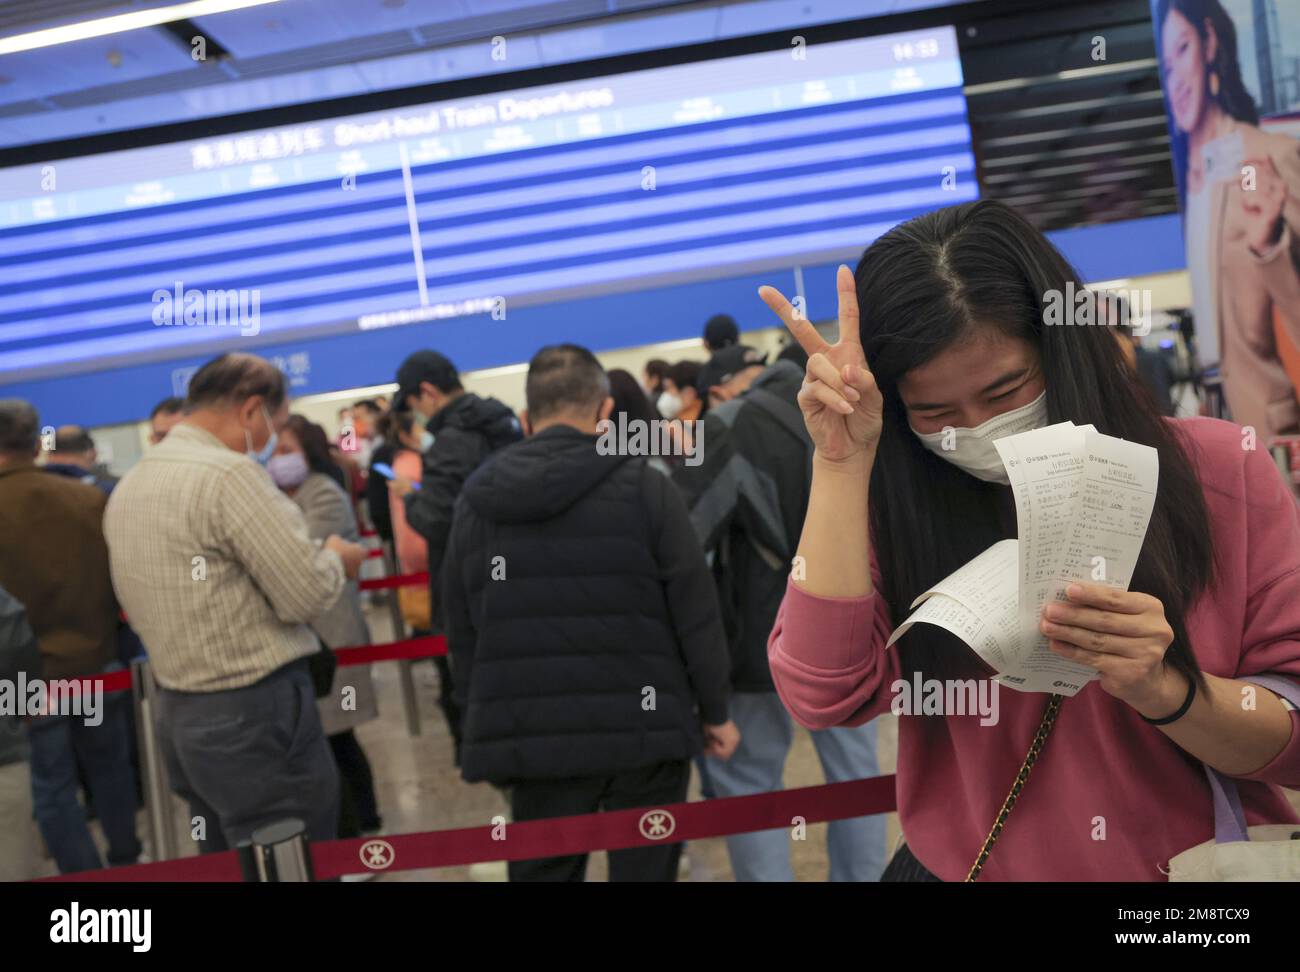 Les gens se font la queue à la gare de Hong Kong West Kowloon pour acheter des billets de train à grande vitesse entre Hong Kong et le continent. 12JAN23 SCMP / Jelly TSE Banque D'Images